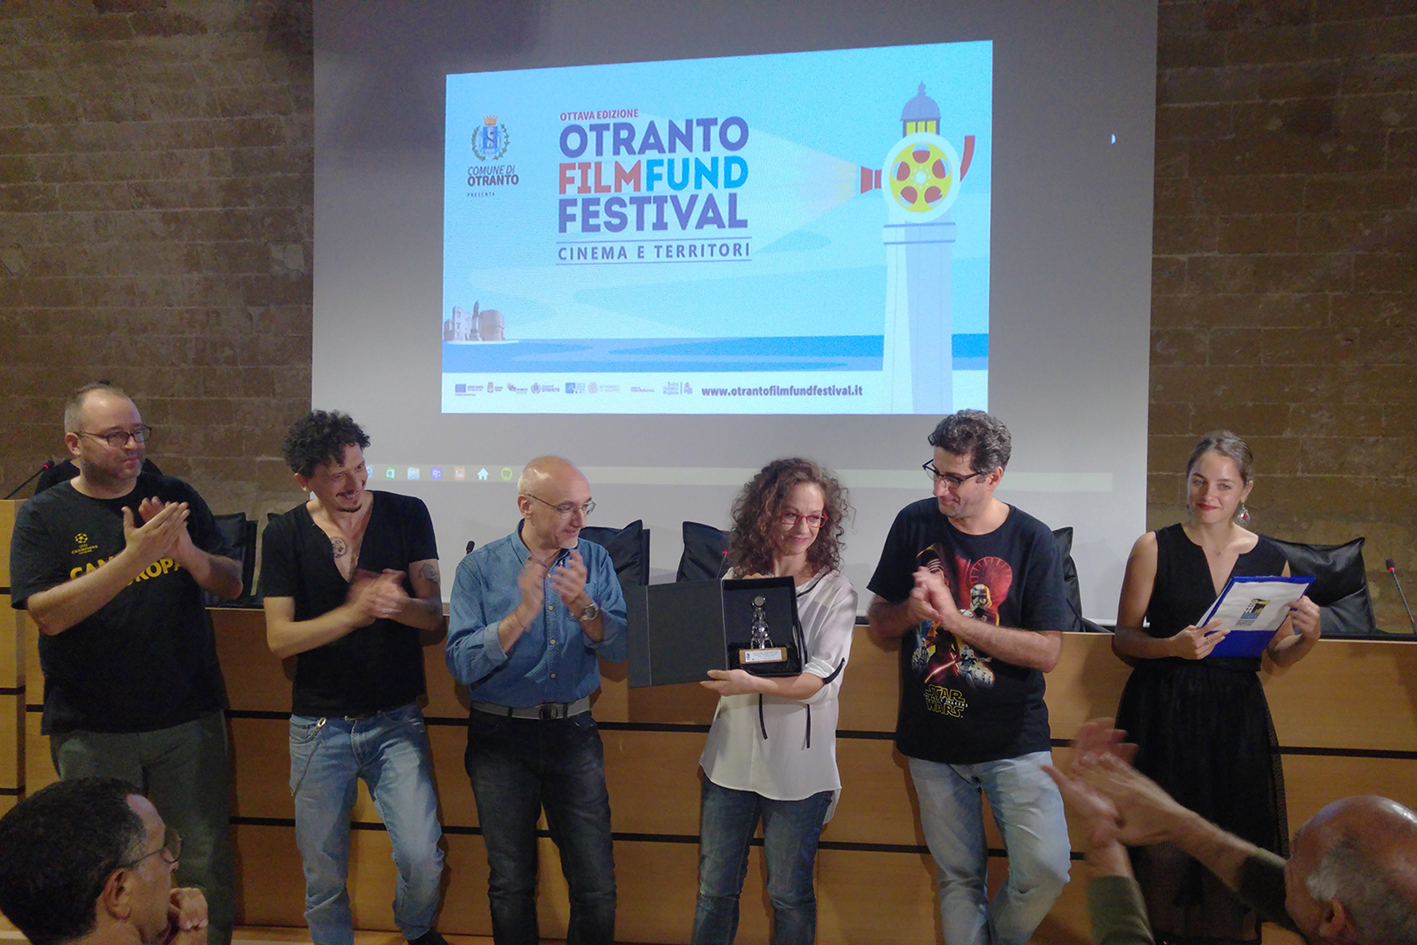 Immagini della premiazione di OFFF 2016 con la consegna dei premi e la descrizione della realizzazione da Roberta Risolo presso il Castello Aragonese di Otranto